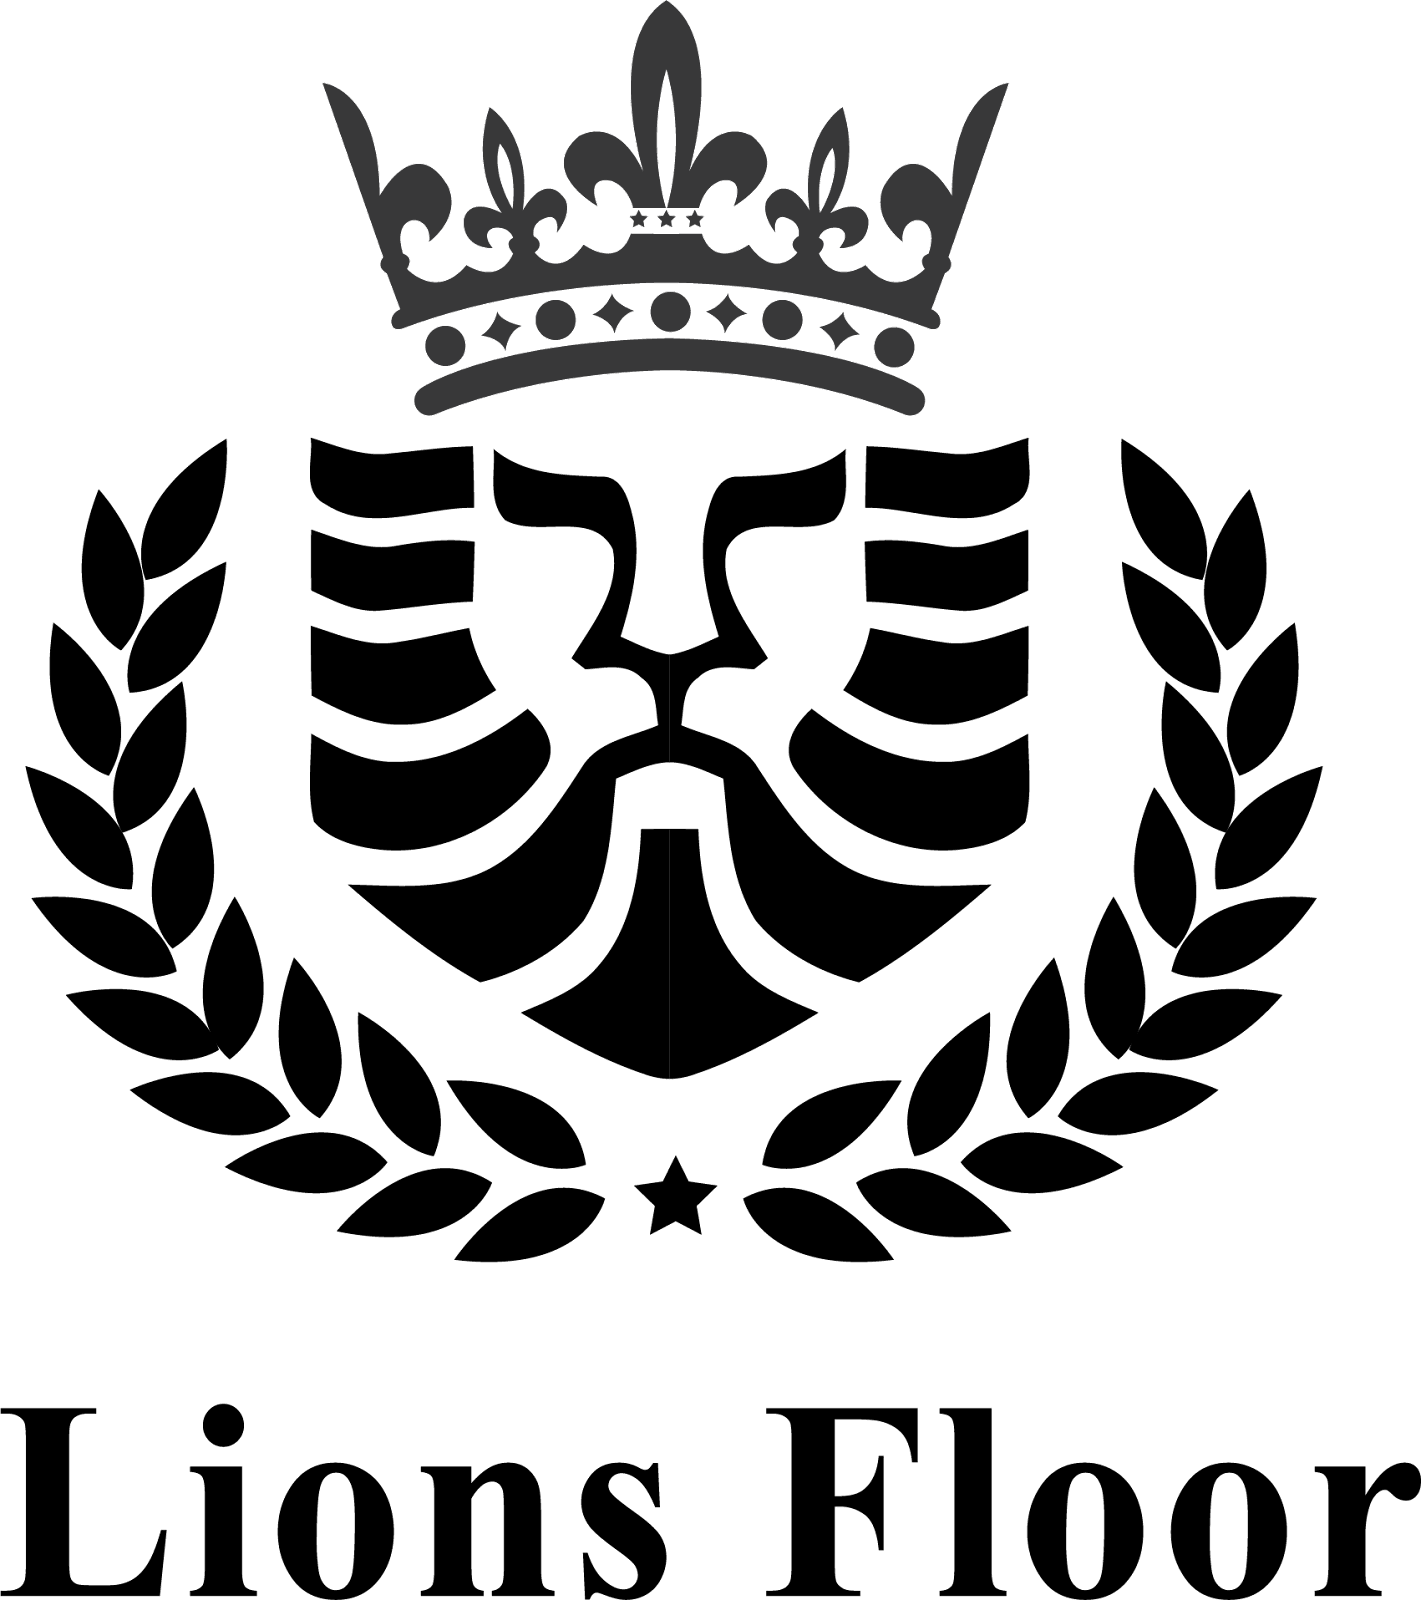 Lions Floor 